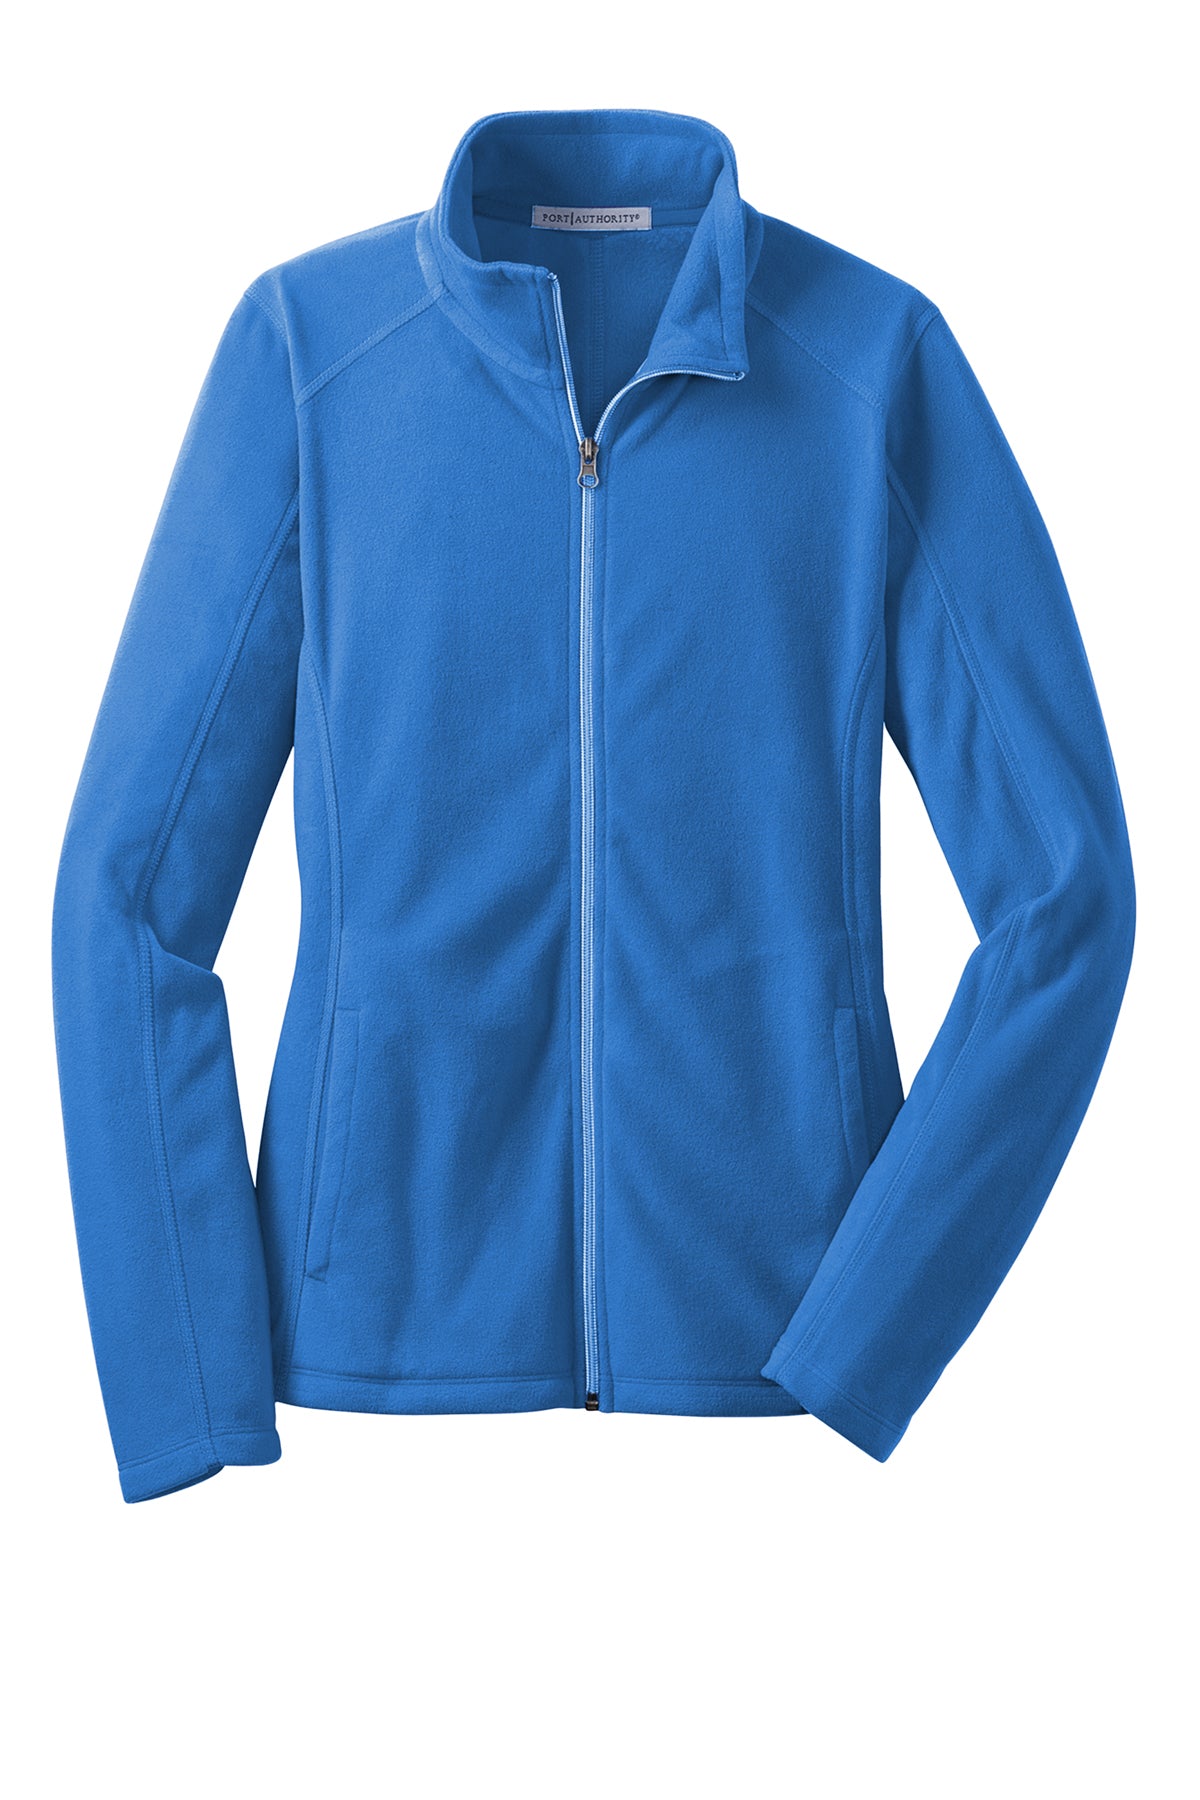 Port Authority® Ladies Microfleece Jacket L223